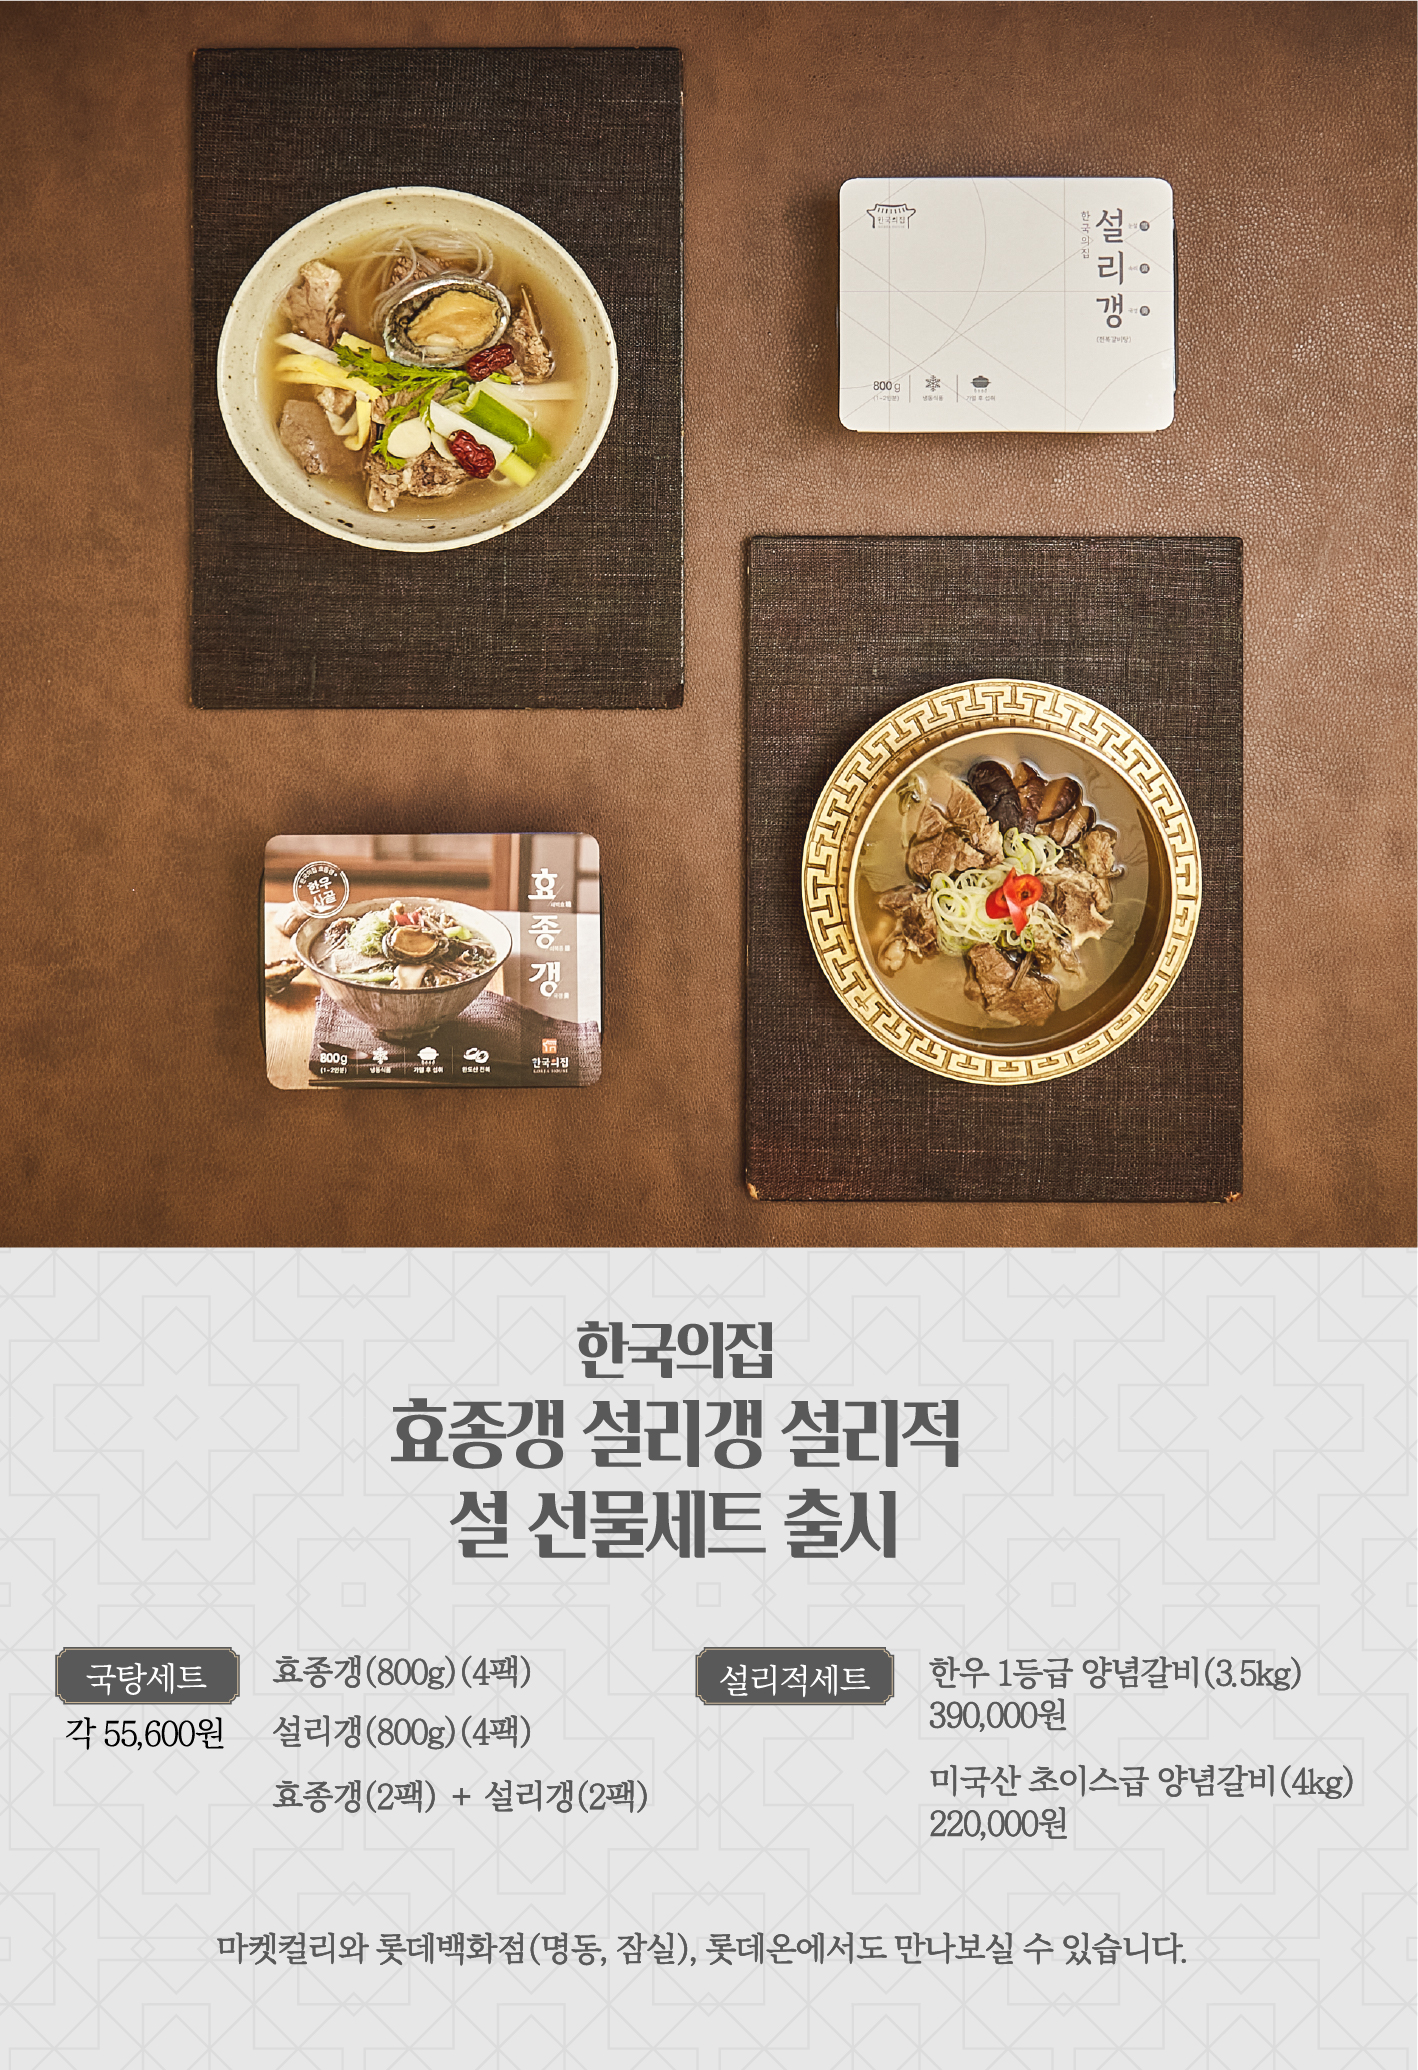 이야기가 담긴 한국의집 설 선물세트 출시 포스터(자세한 내용 하단 참조)